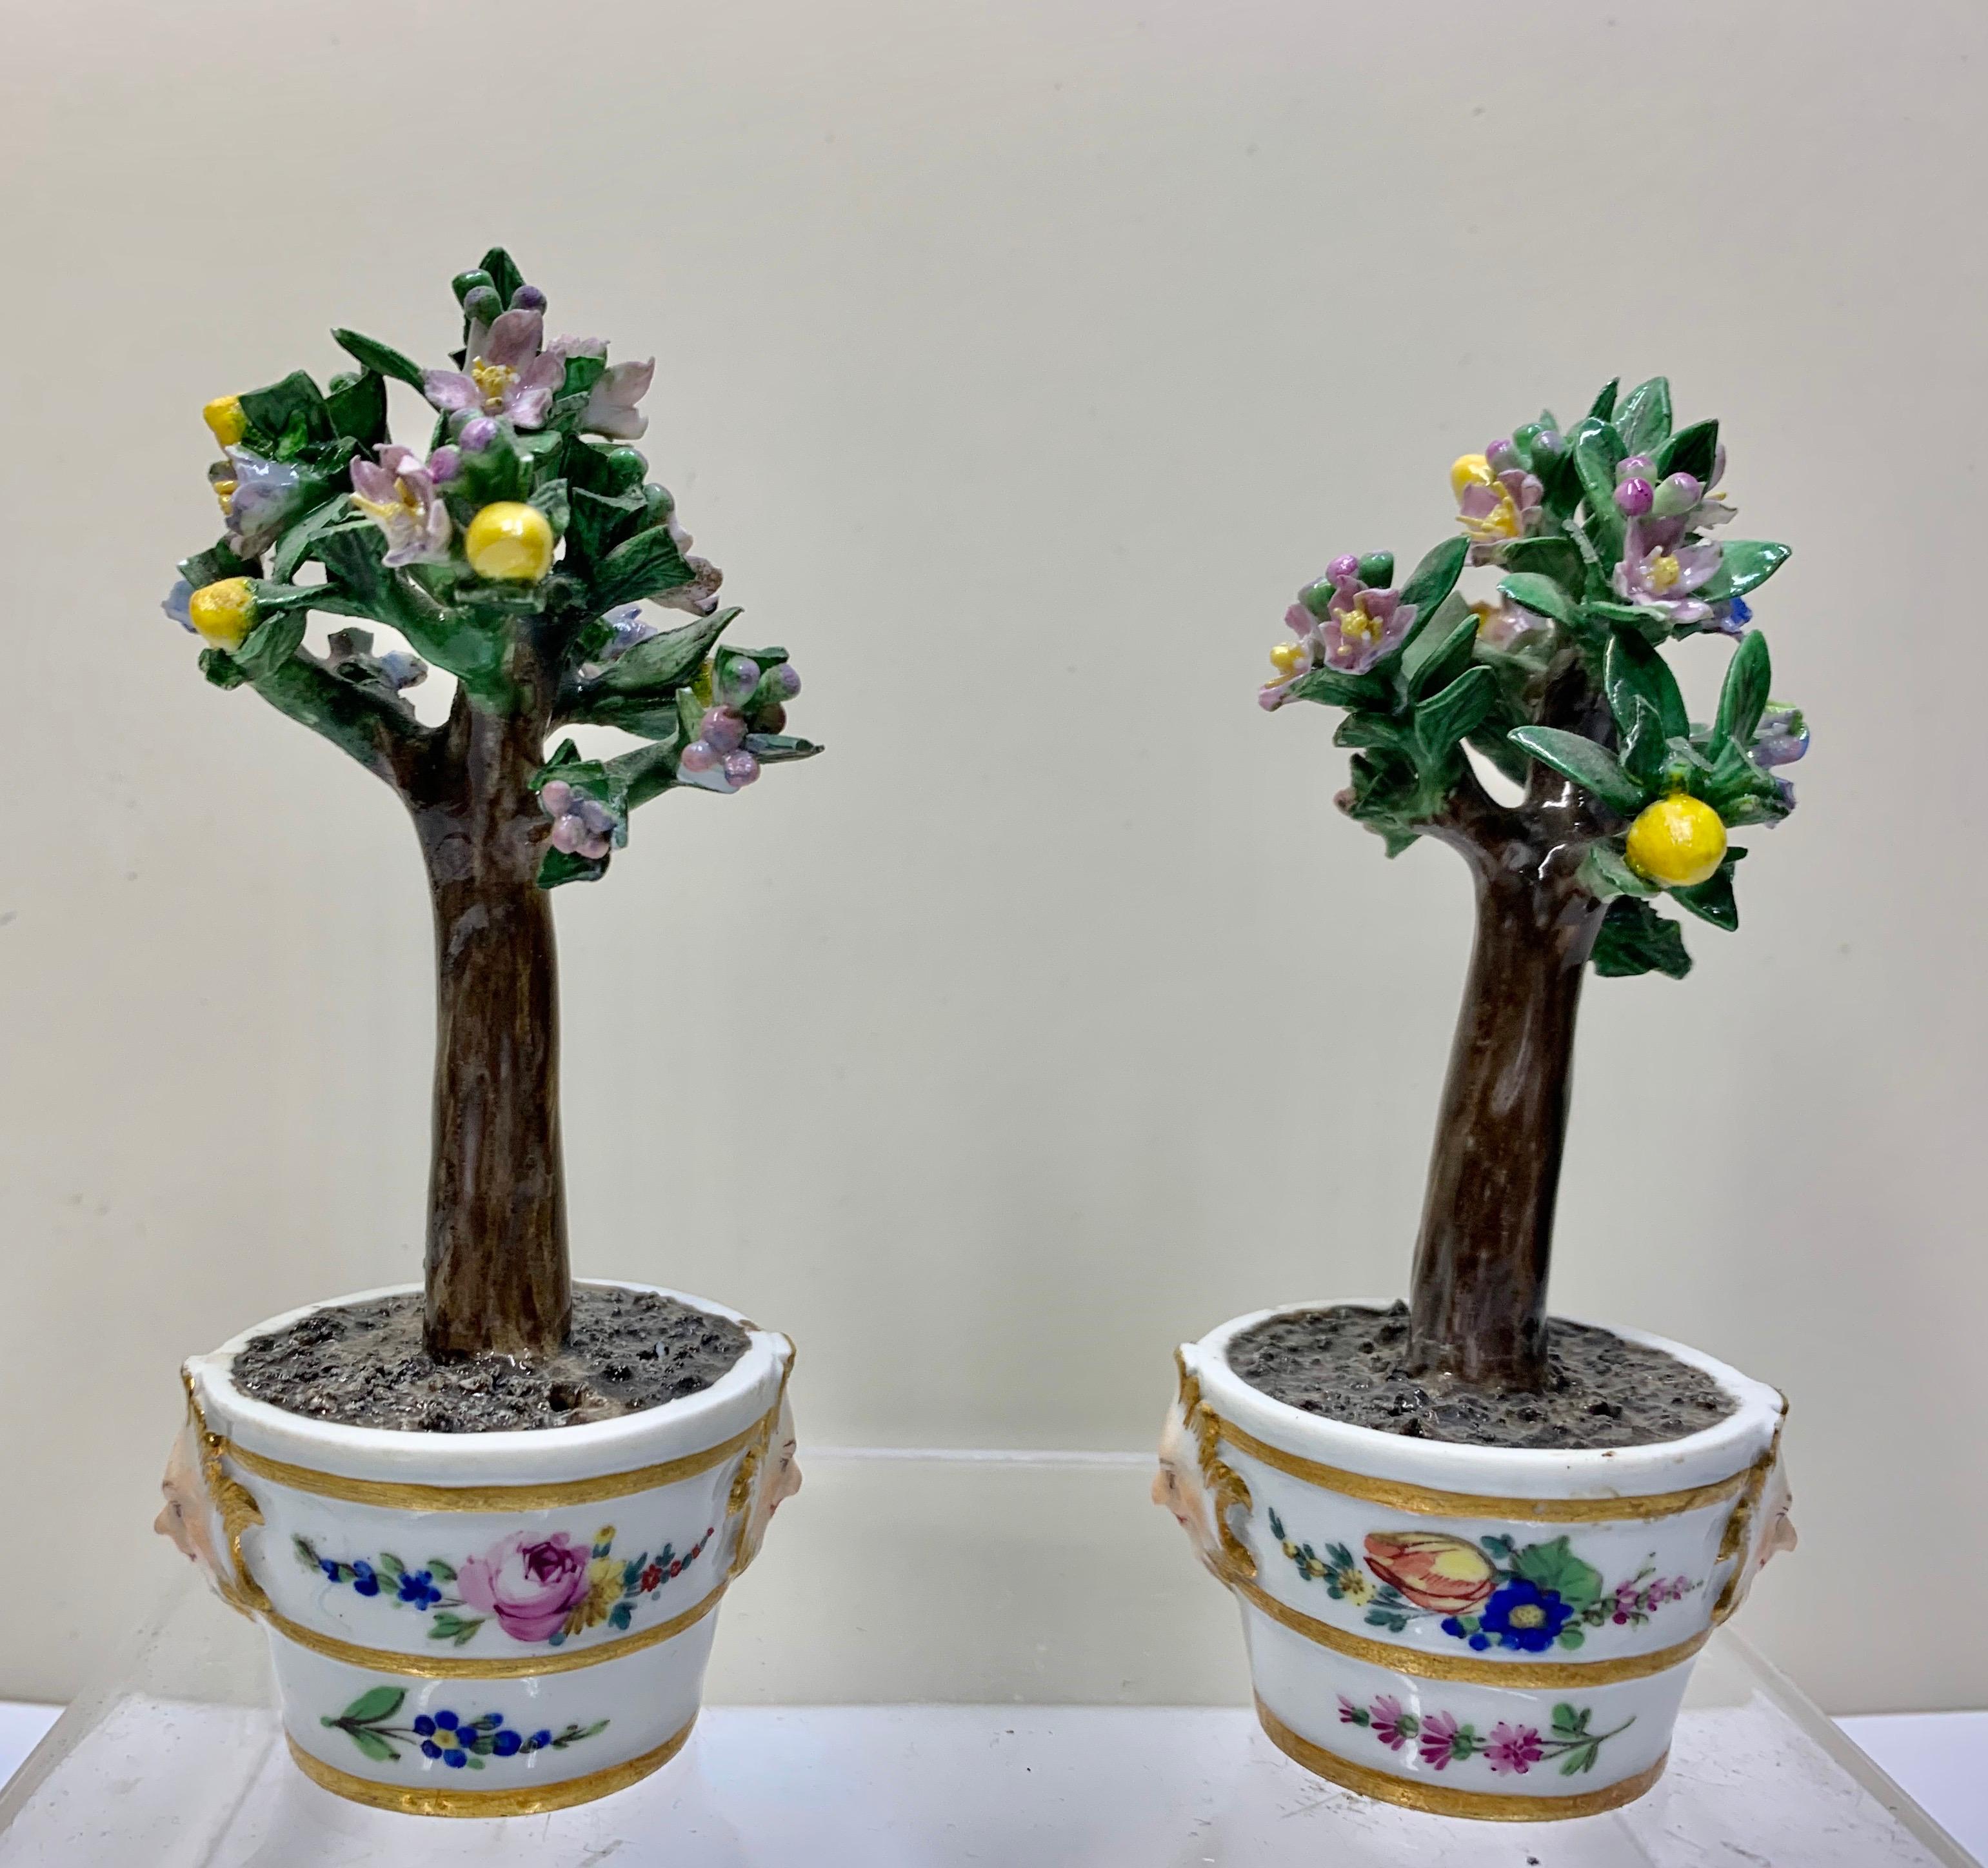 Superbe paire d'arbres à citron Marcolini de Meissen assortis dans des bacs vers 1790.
Modèles de pots de fleurs en porcelaine de Meissen de très bonne qualité, modelés comme des bacs cylindriques rehaussés de dorure avec 2 masques mythologiques